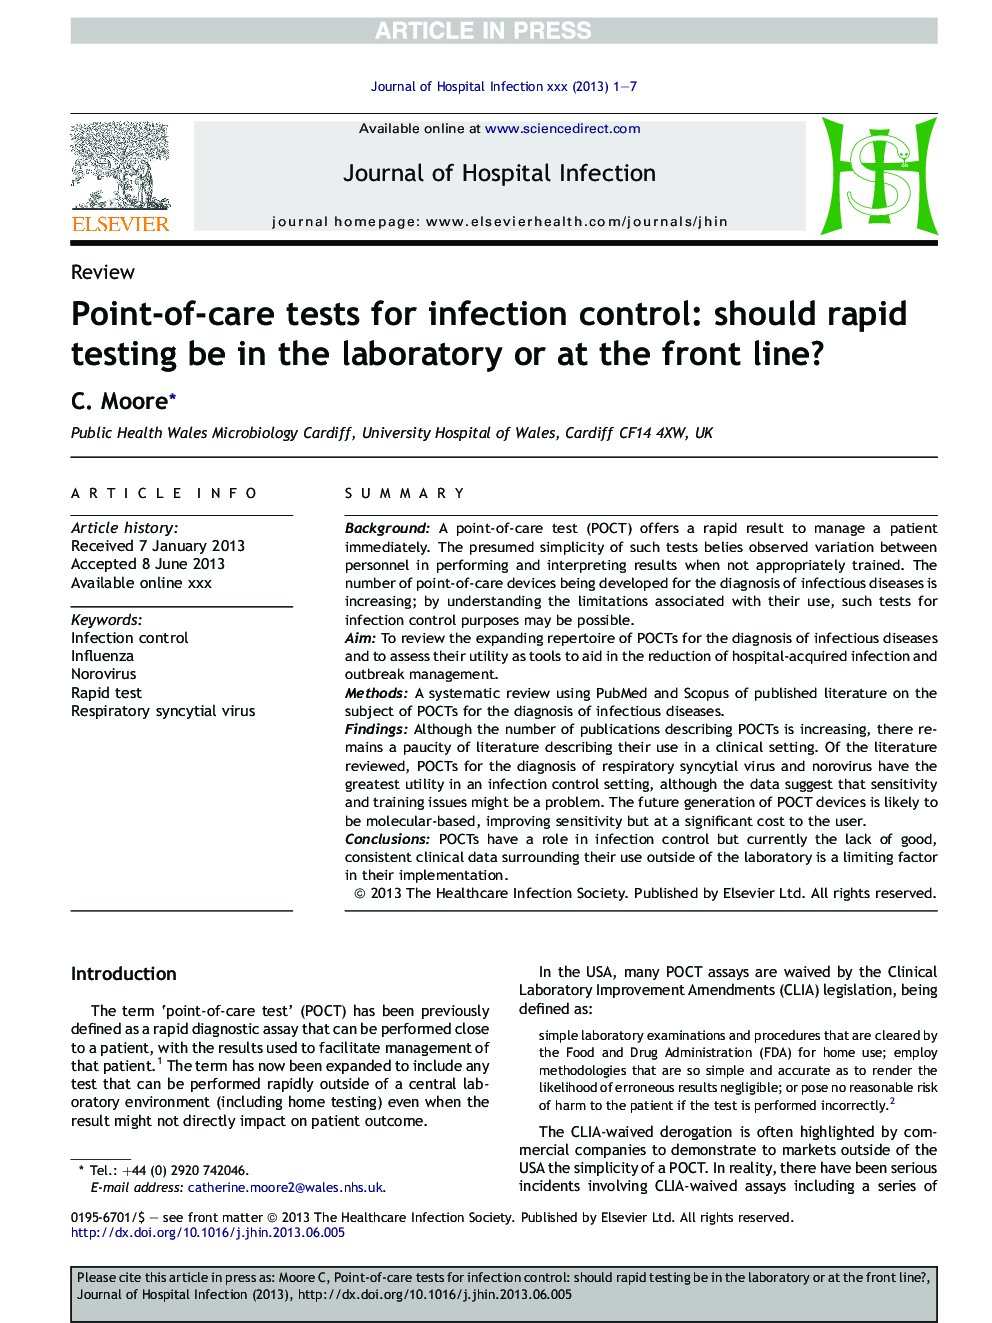 آزمایشات نقطه ای برای کنترل عفونت: باید آزمایش سریع در آزمایشگاه یا در خط مقدم انجام شود؟ 